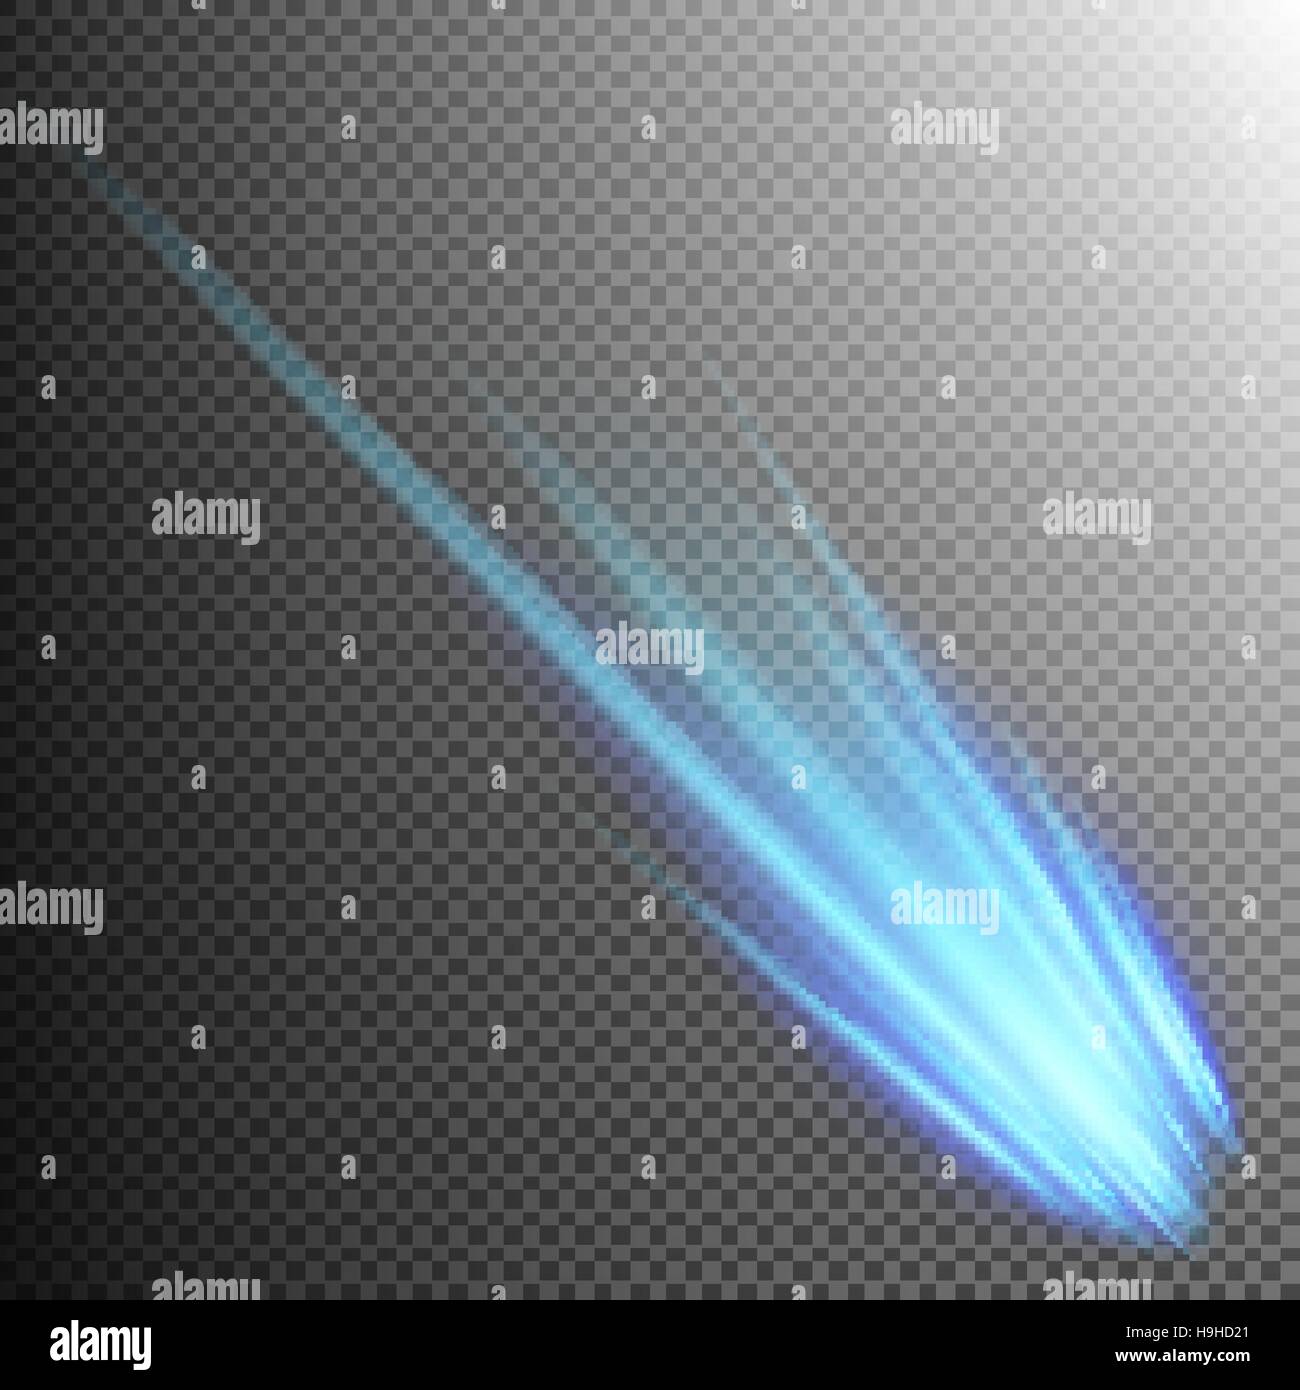 Blue Meteor or Comet. EPS 10 Stock Vector